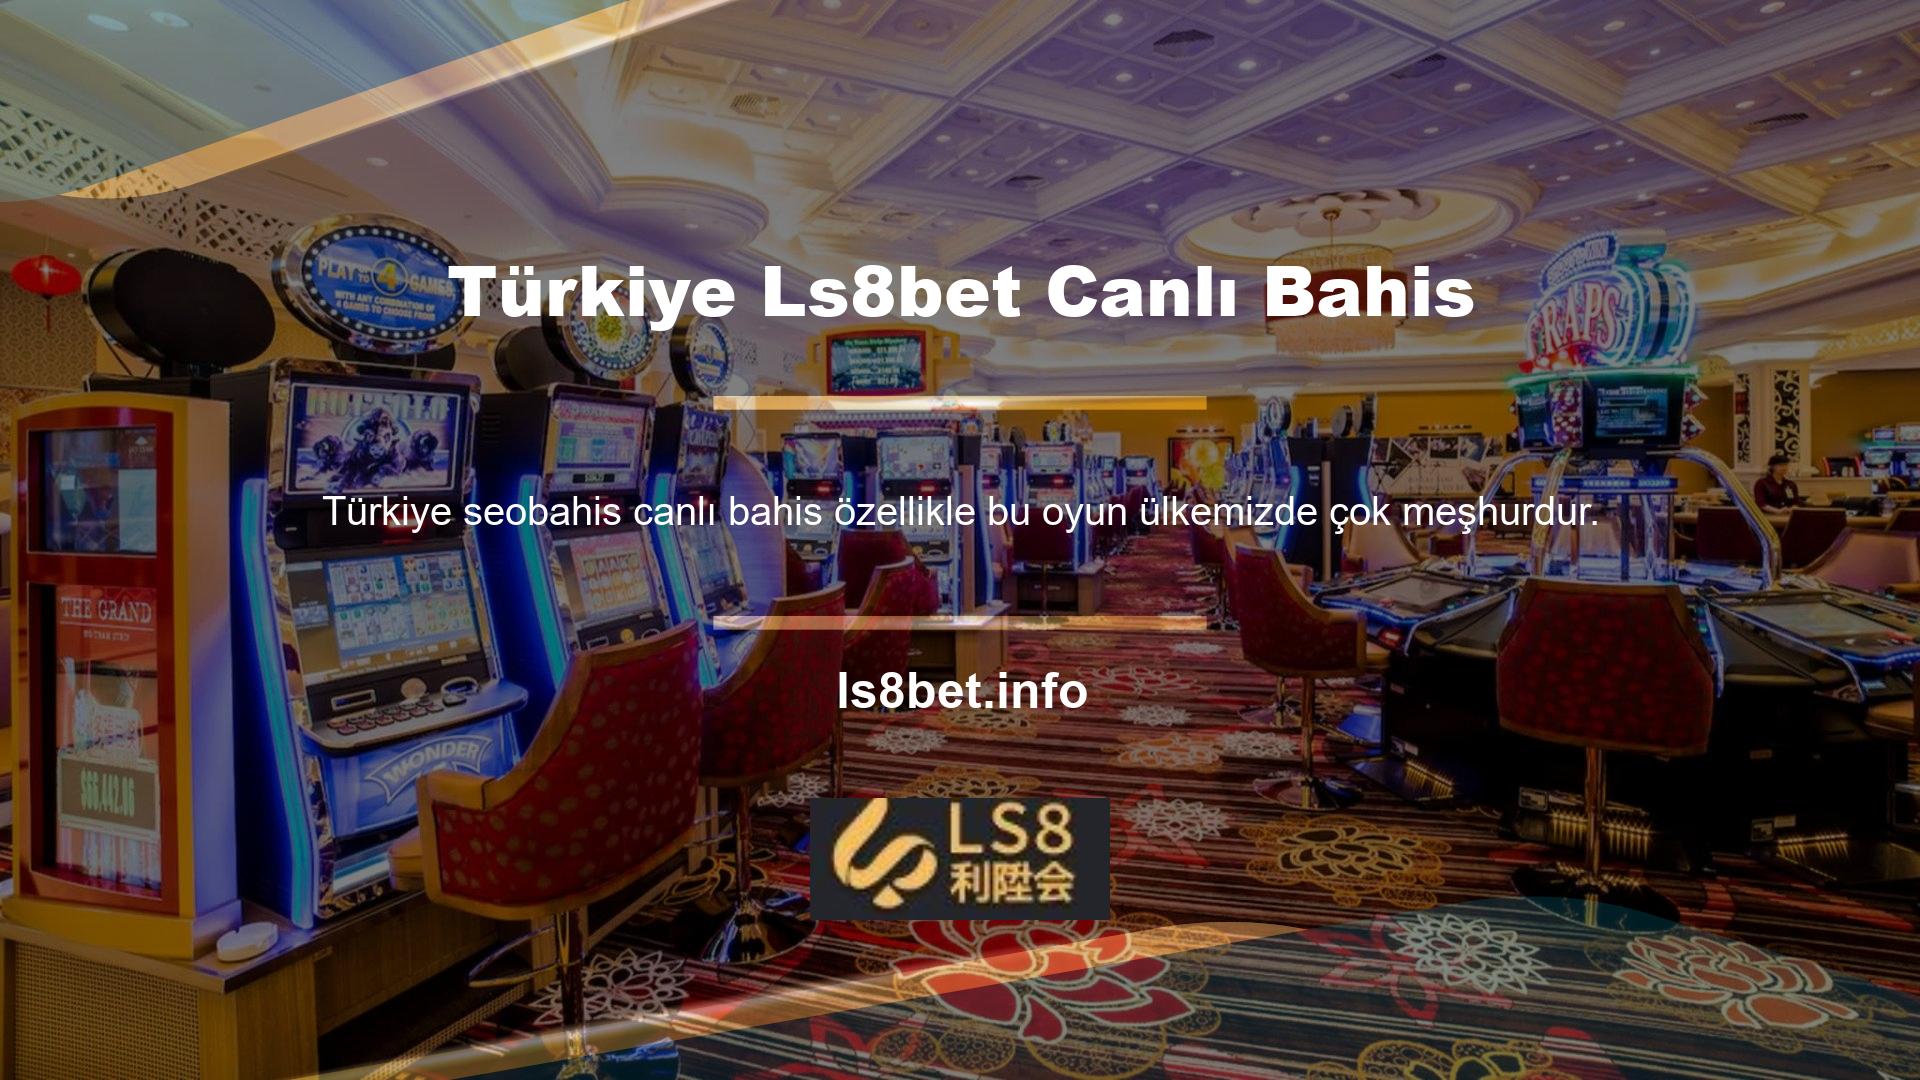 Teknolojinin gelişmesi ve Türkiye Ls8bet canlı bahisin hayatımıza girmesiyle birlikte artık internet üzerinden canlı bahis oyunları oynamak da mümkün